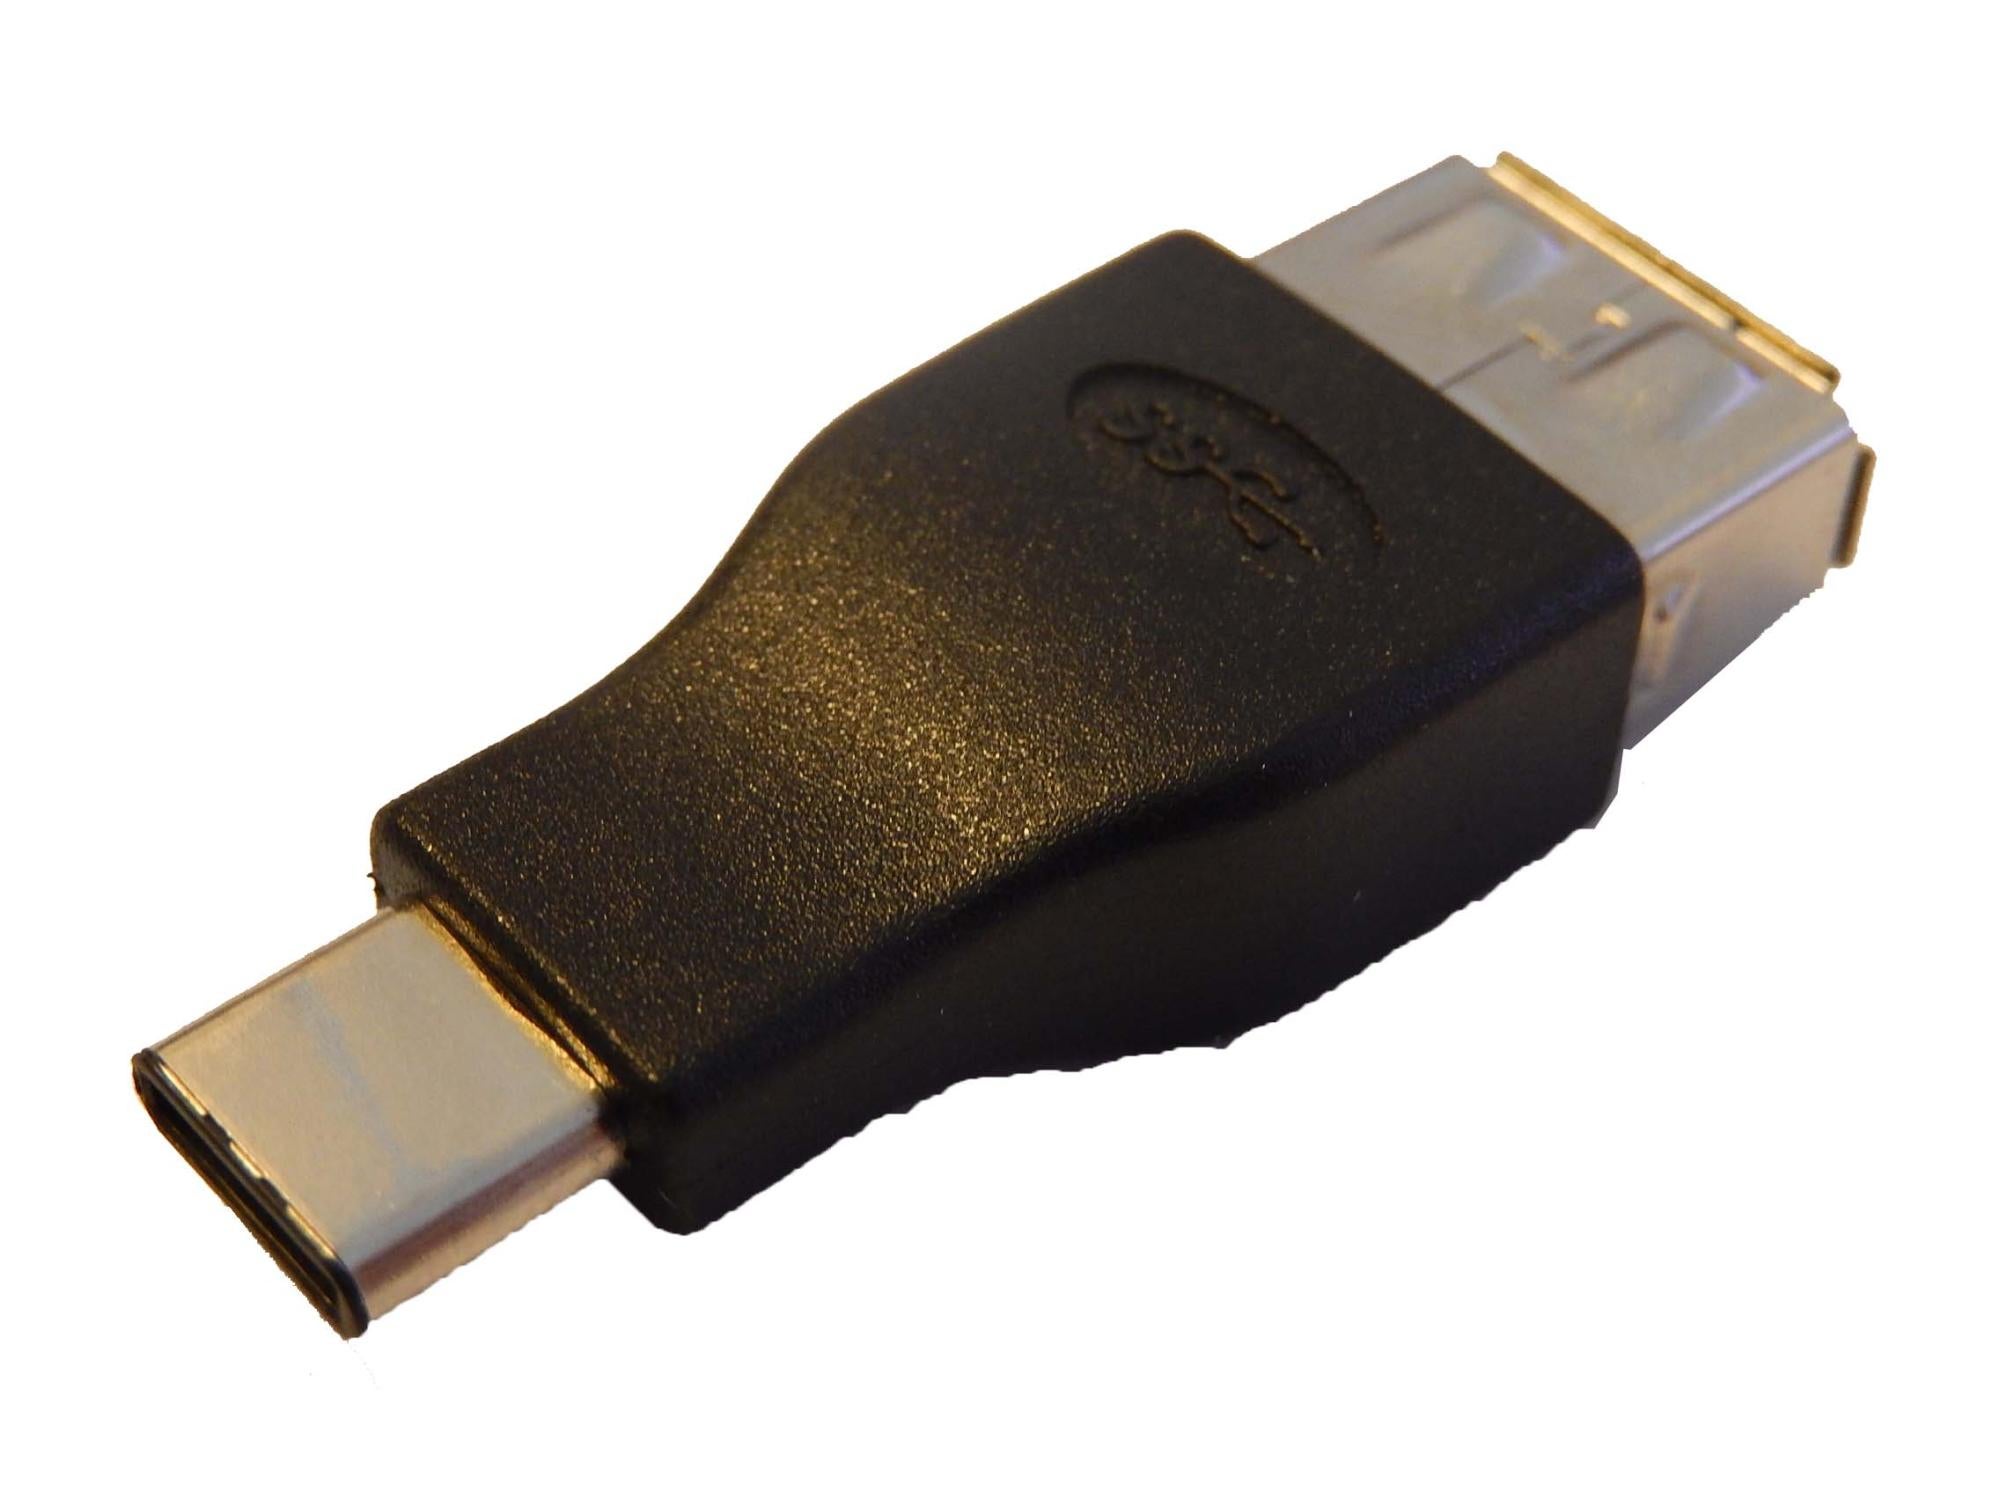 LeTV Adaptateur USB 3.0 >>> USB 3.1 Type C pour LeTV S1 X600,Le1 PRO X800,Le MAX 